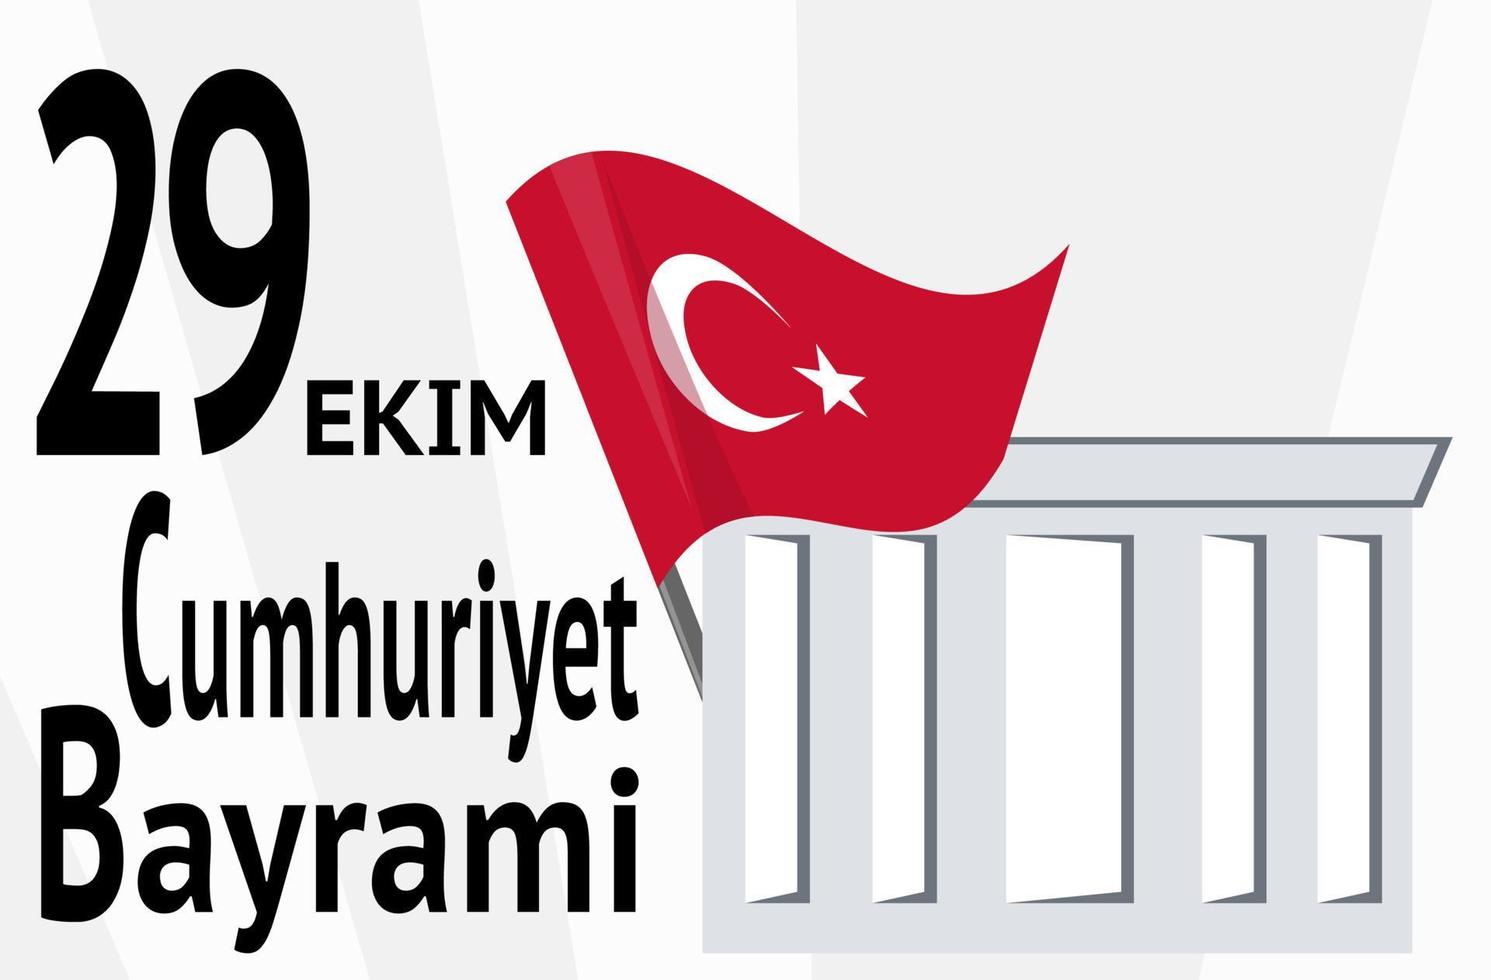 29 octobre jour de la république de turquie. drapeau officiel de la turquie vecteur